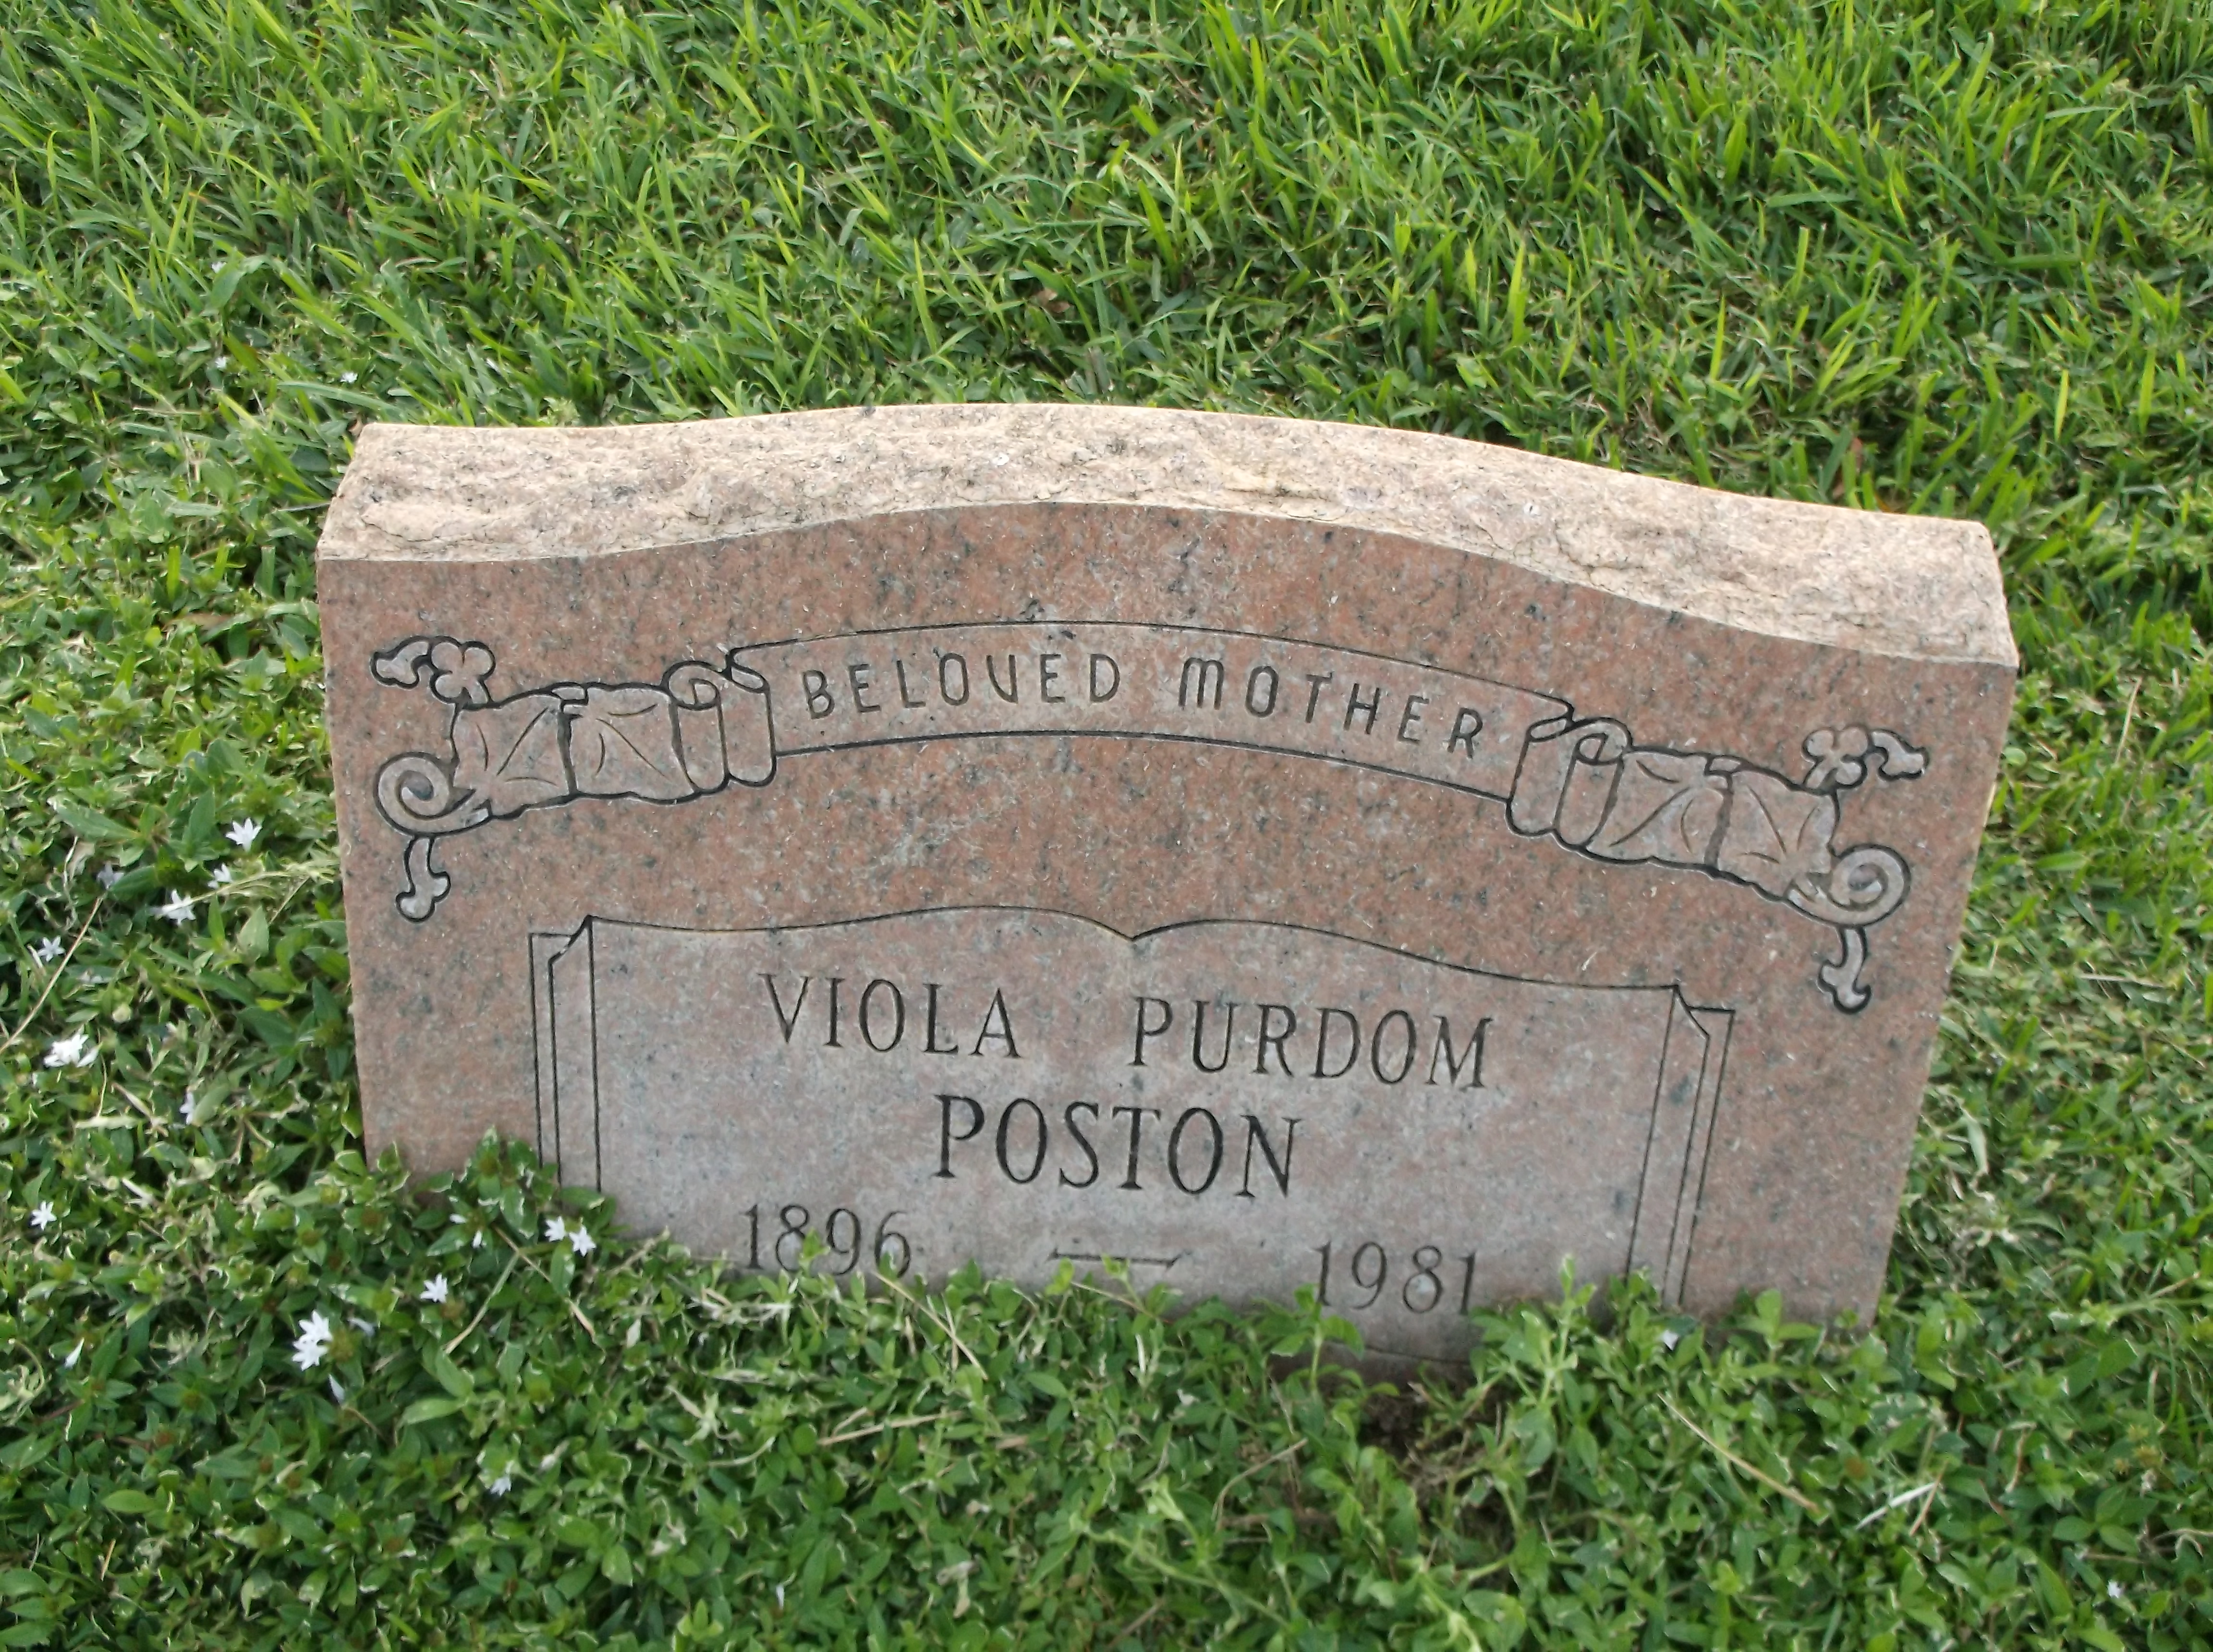 Viola Purdom Poston